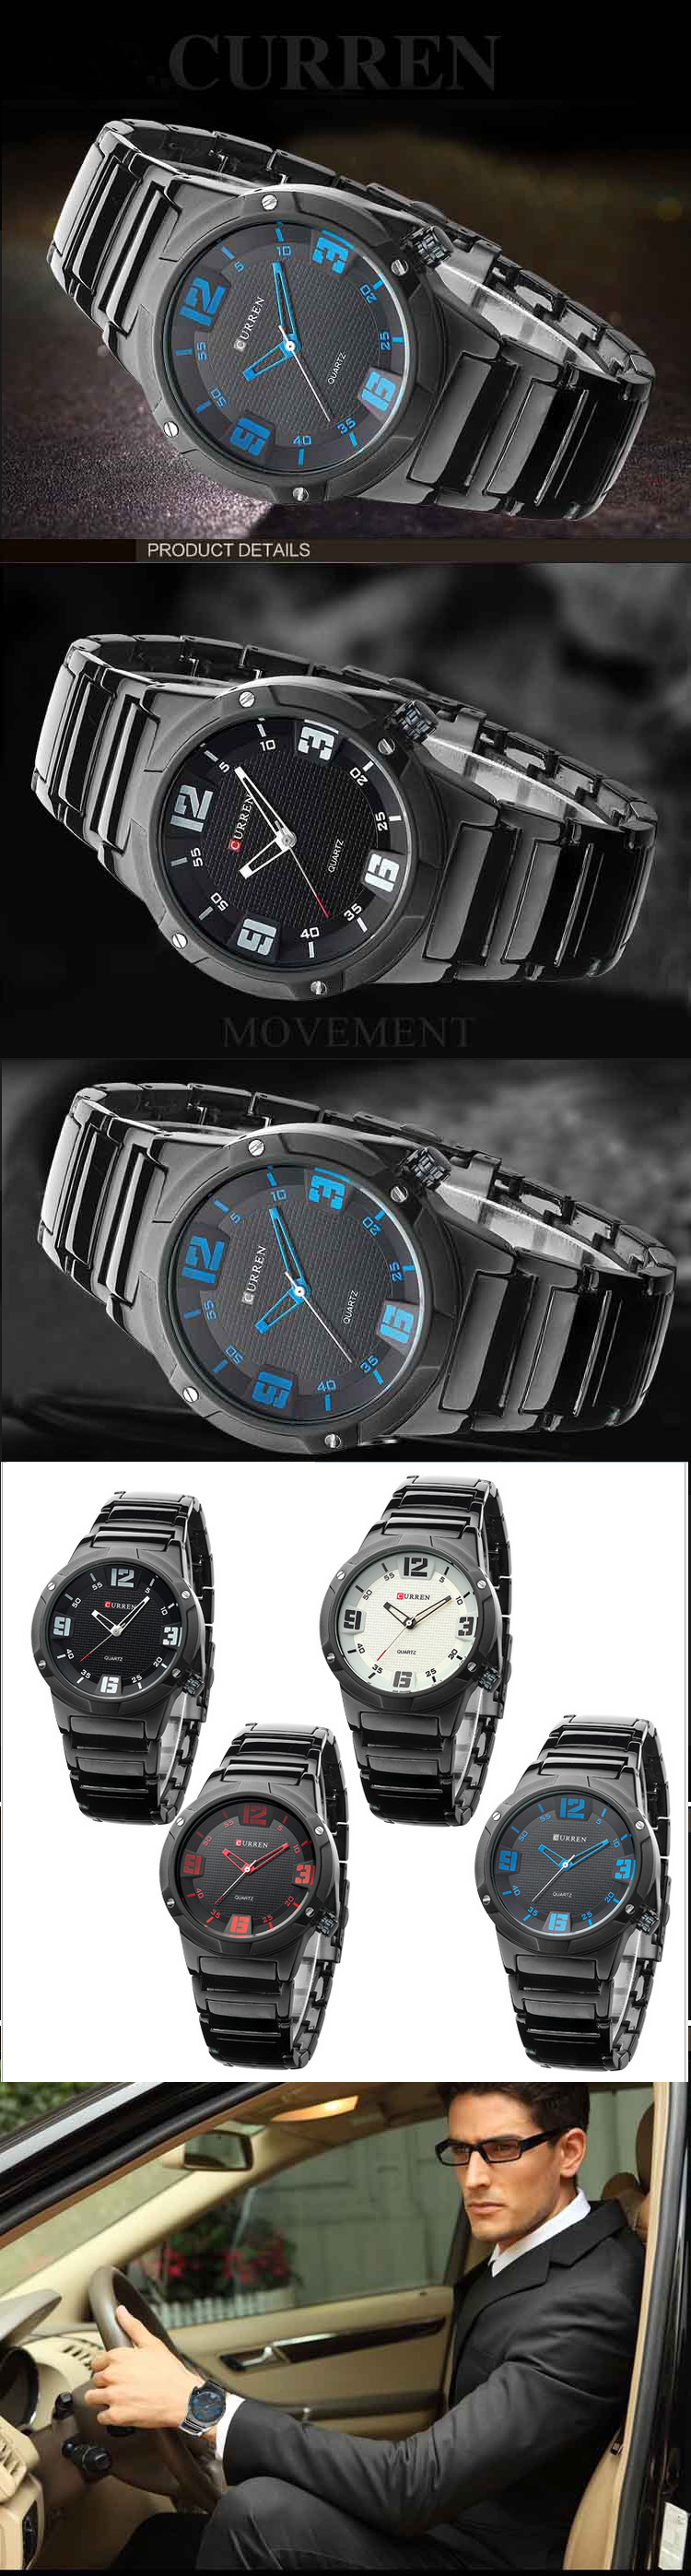 jual jam tangan pria terbaru dengan gaya classic jam tangan ini cocok untuk pria kantoran